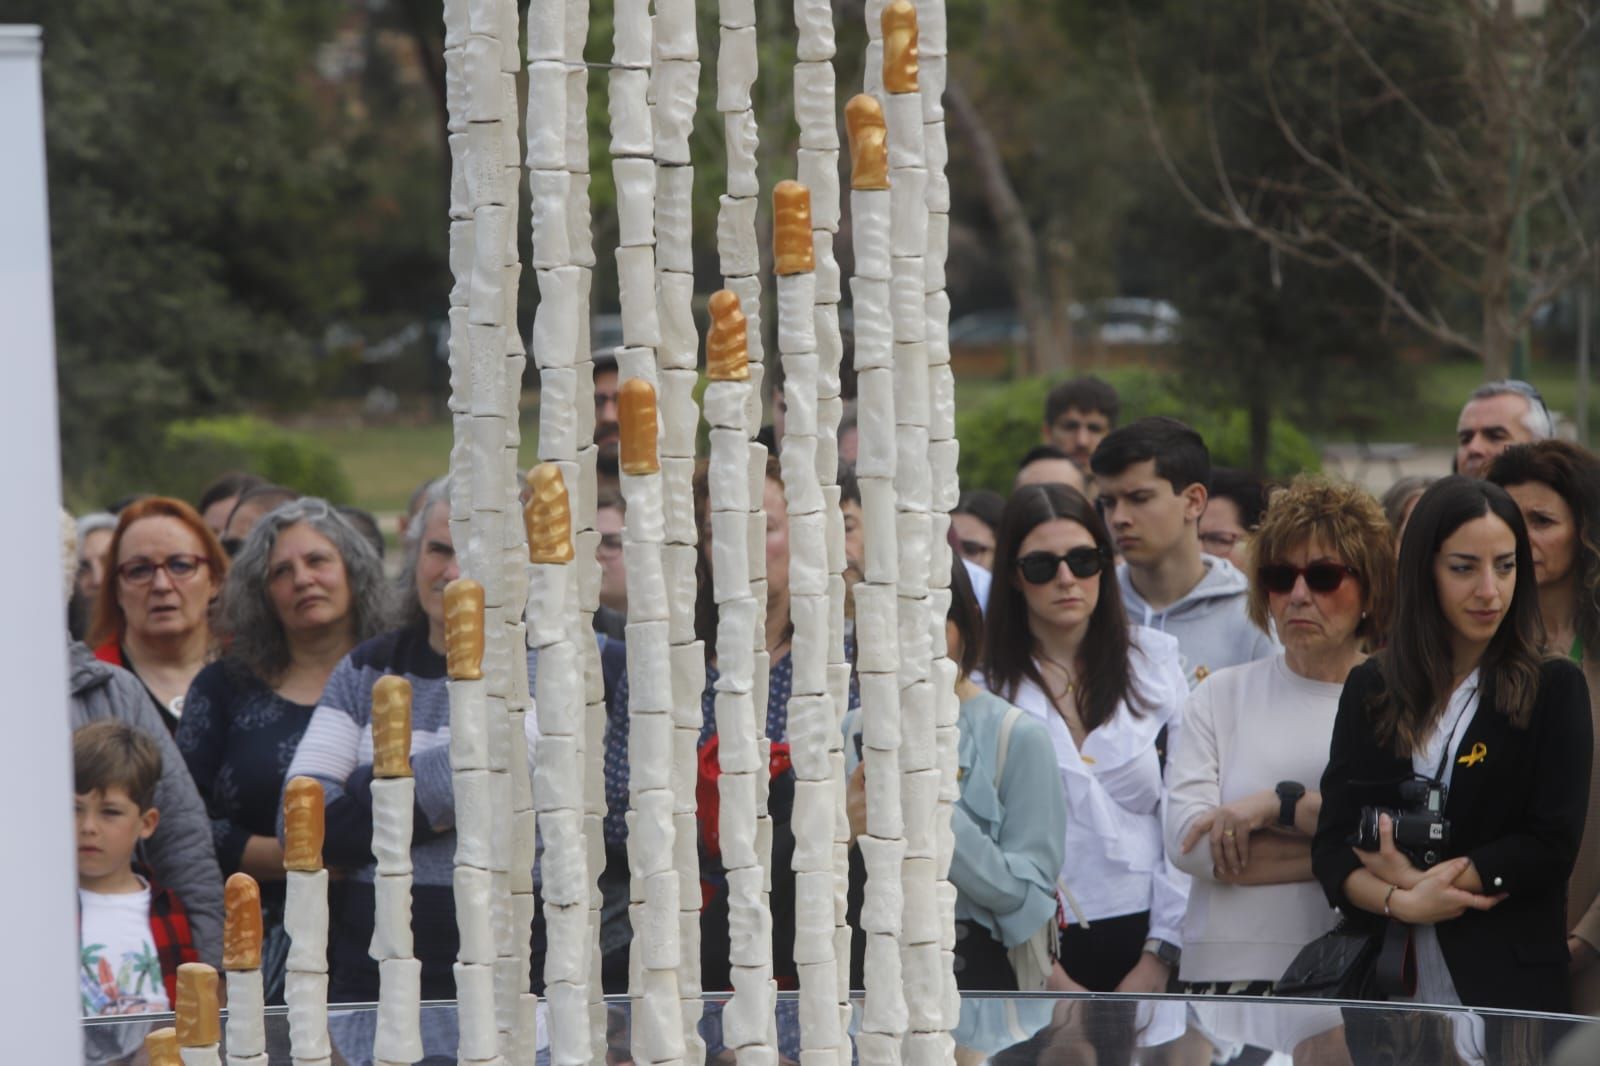 València dedica un monumento a los menores fallecidos por cáncer